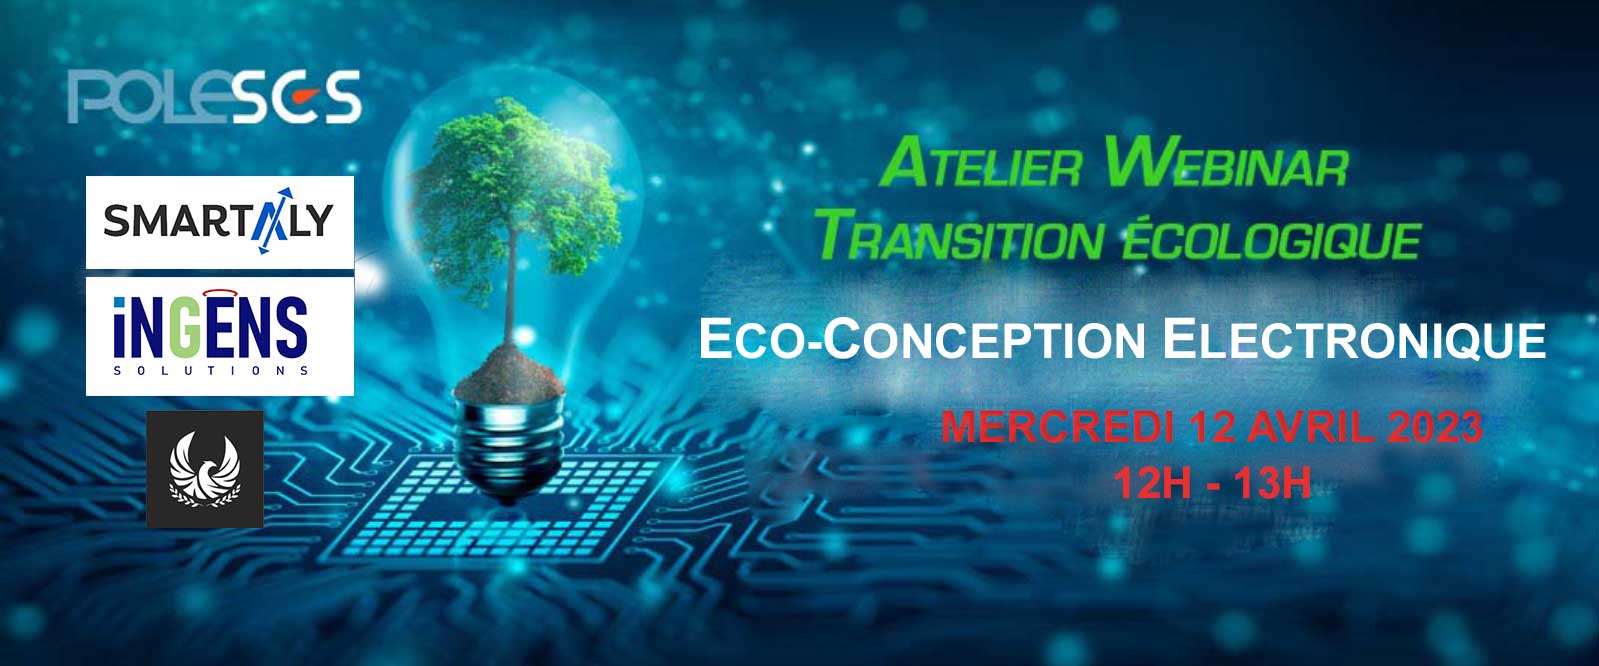 Webinar Transition écologique – Eco-conception électronique